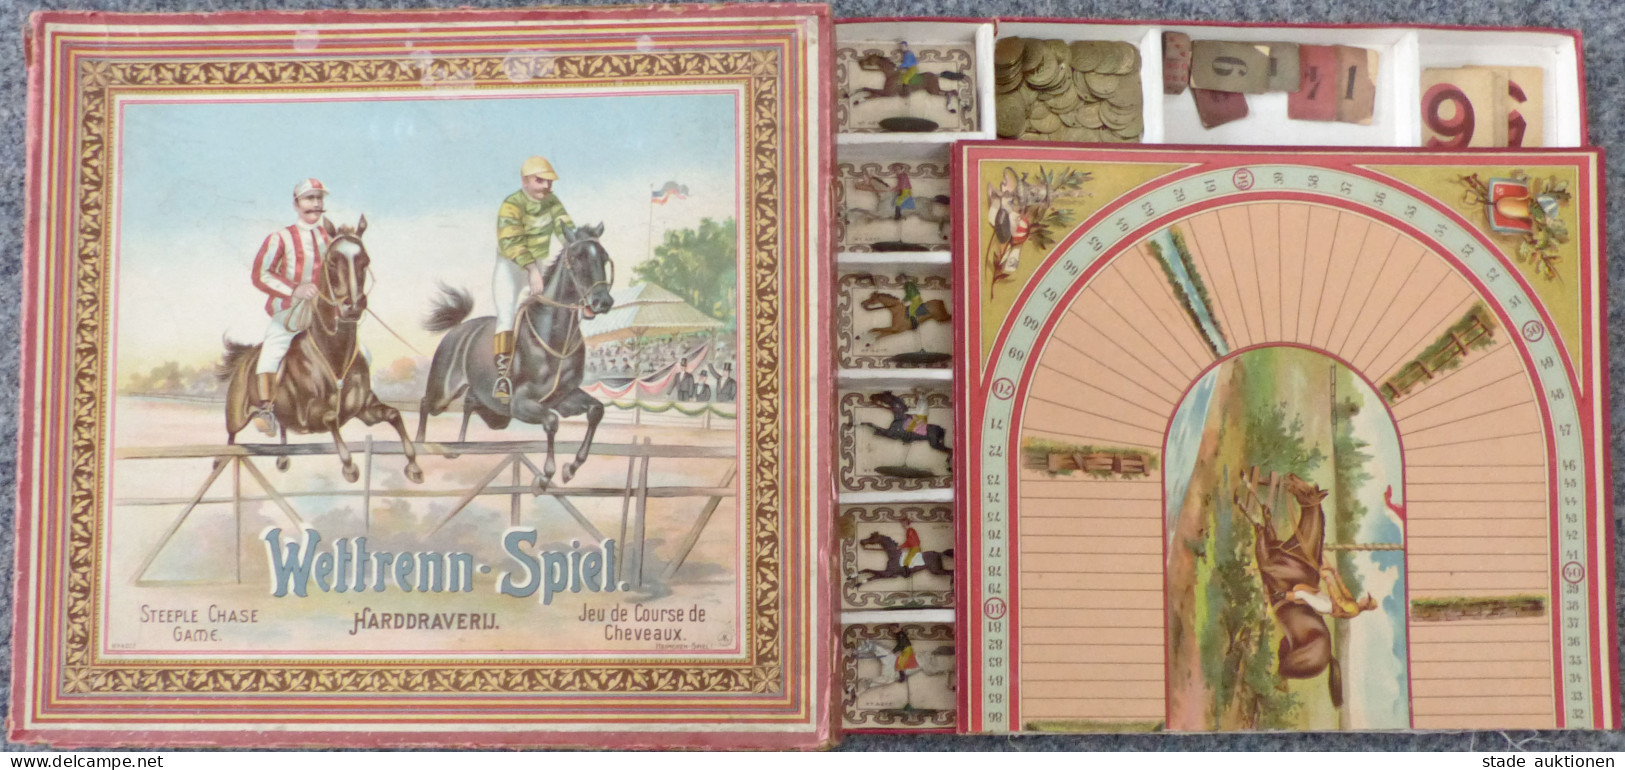 Spielzeug Wettrenn-Spiel Von Heimchen-Spiel 1902, Mit Original-Schachtel Und Anleitung, Alle Pferde Und Spielgeld Vorhan - Giochi, Giocattoli